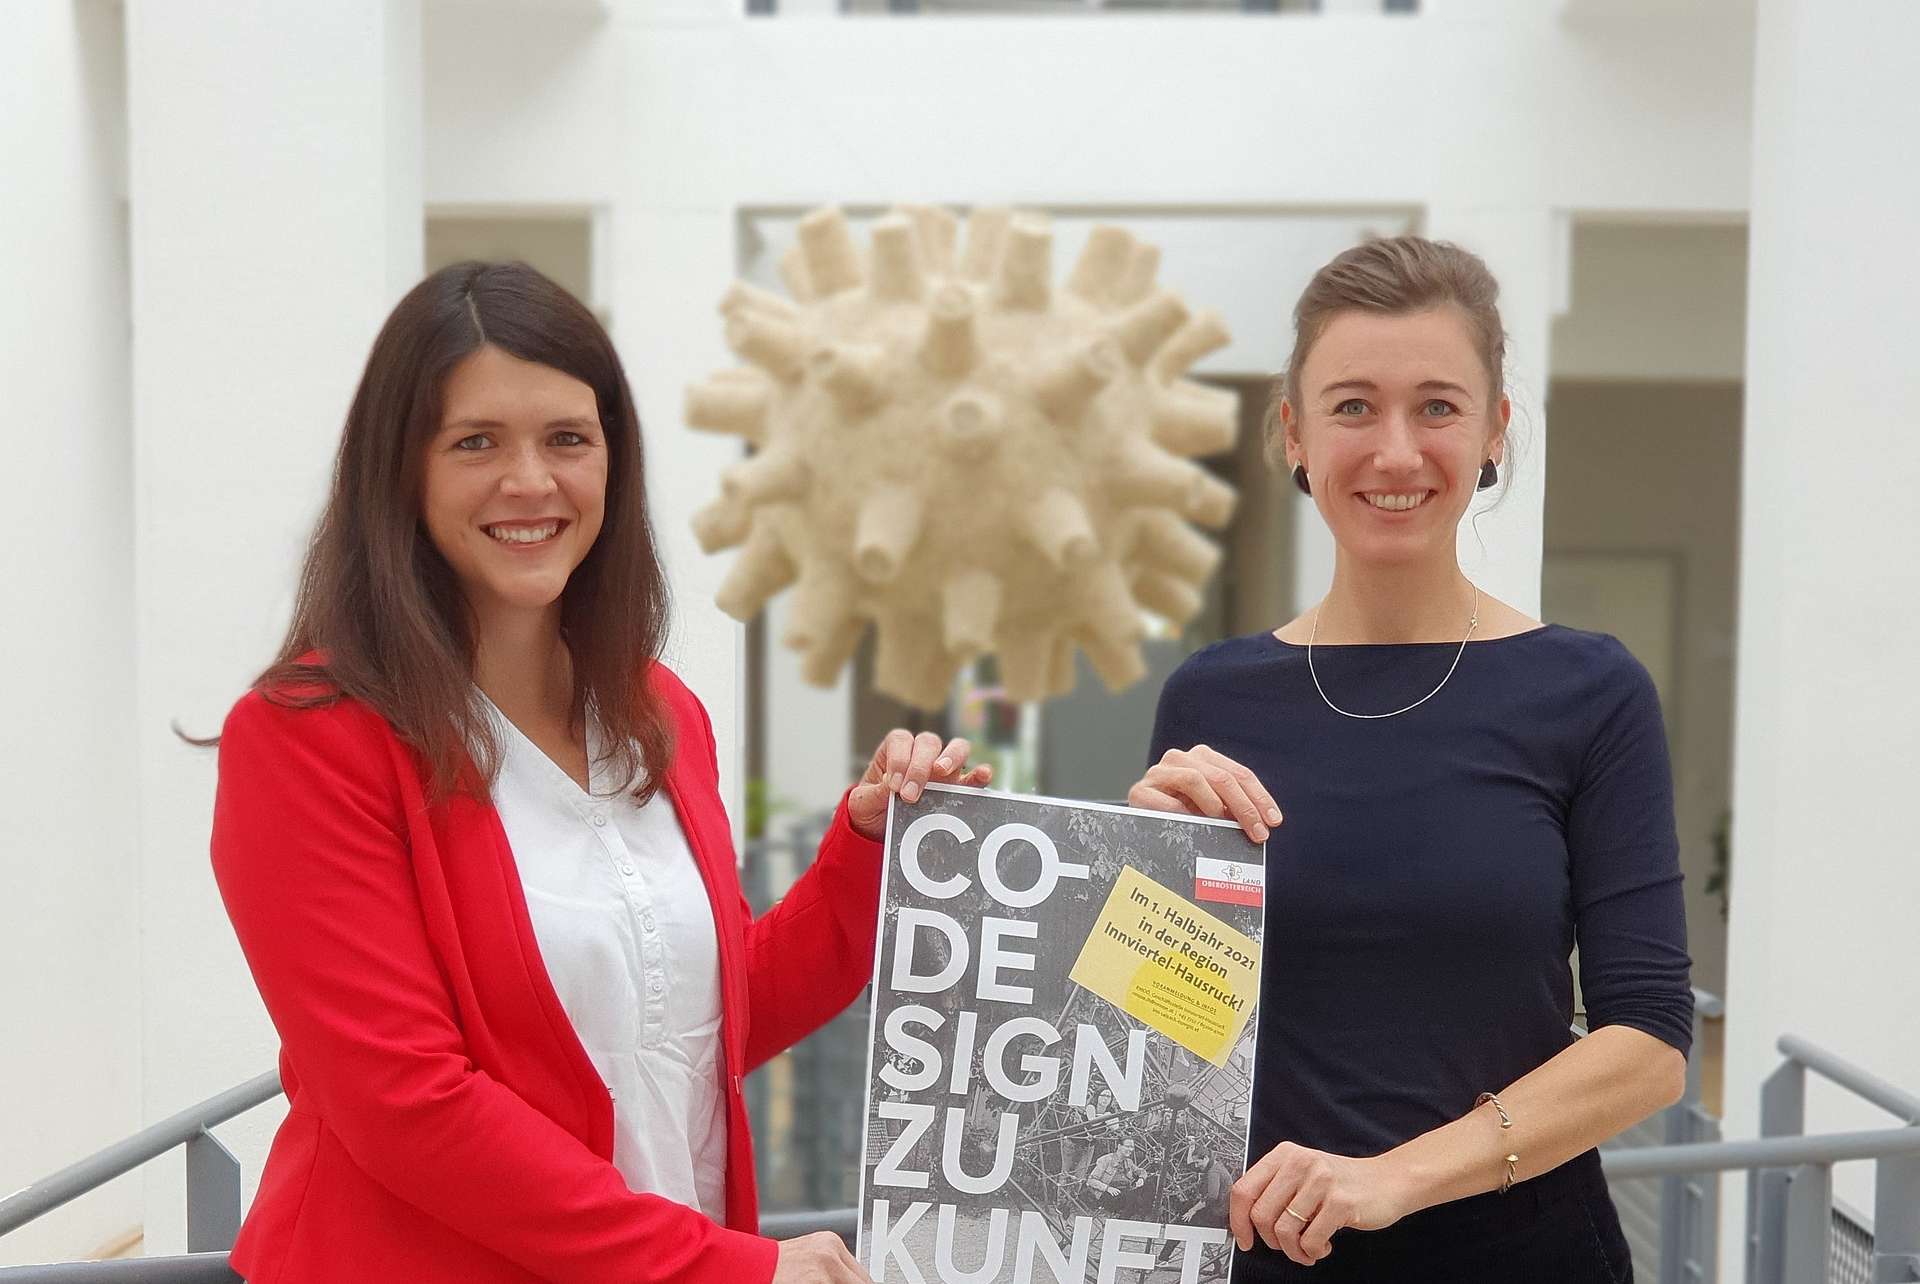 Zwei Frauen halten gemeinsam ein Plakat mit der Aufschrift "Co-Design Zukunft"